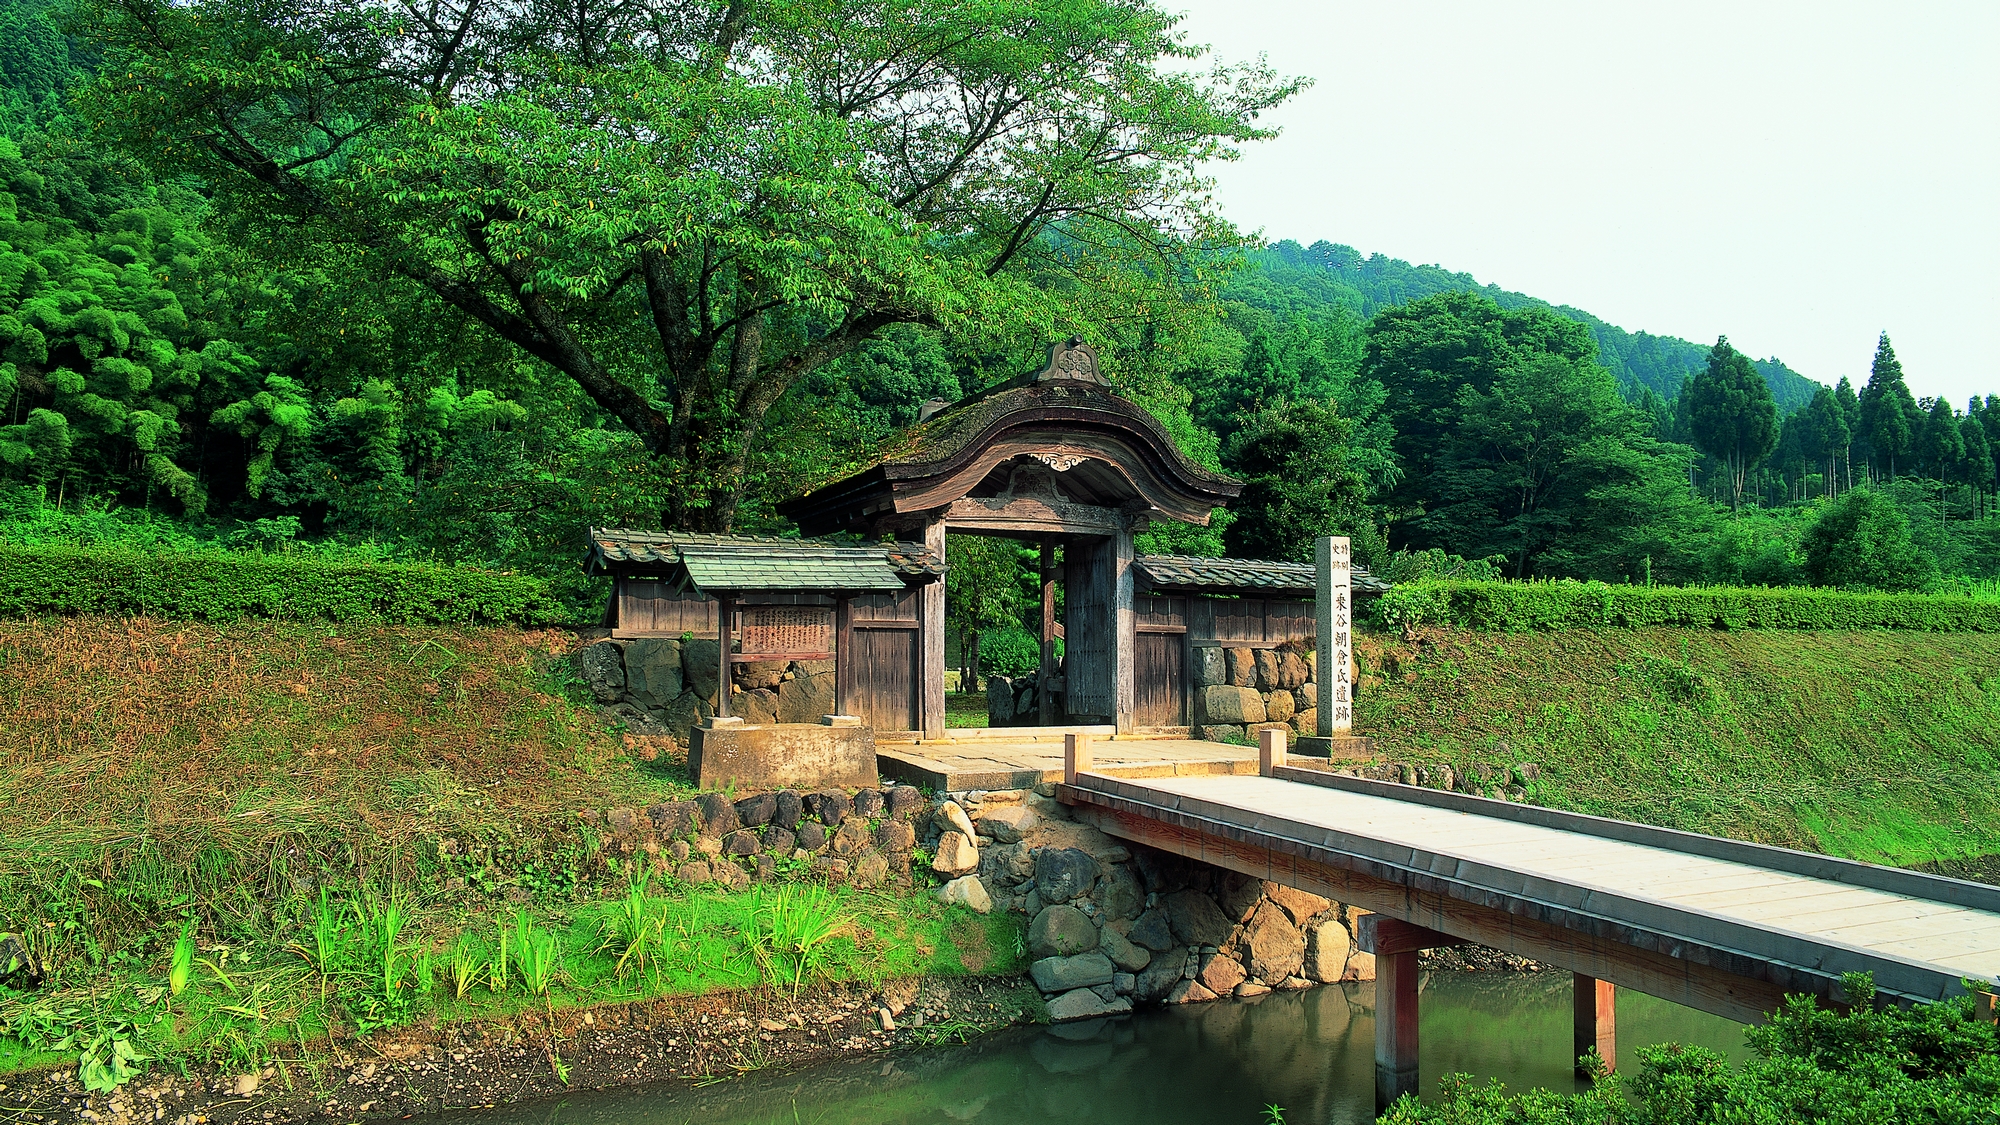 一乗谷朝倉氏遺跡は国の重要文化財・特別史跡・特別名勝に指定されています。